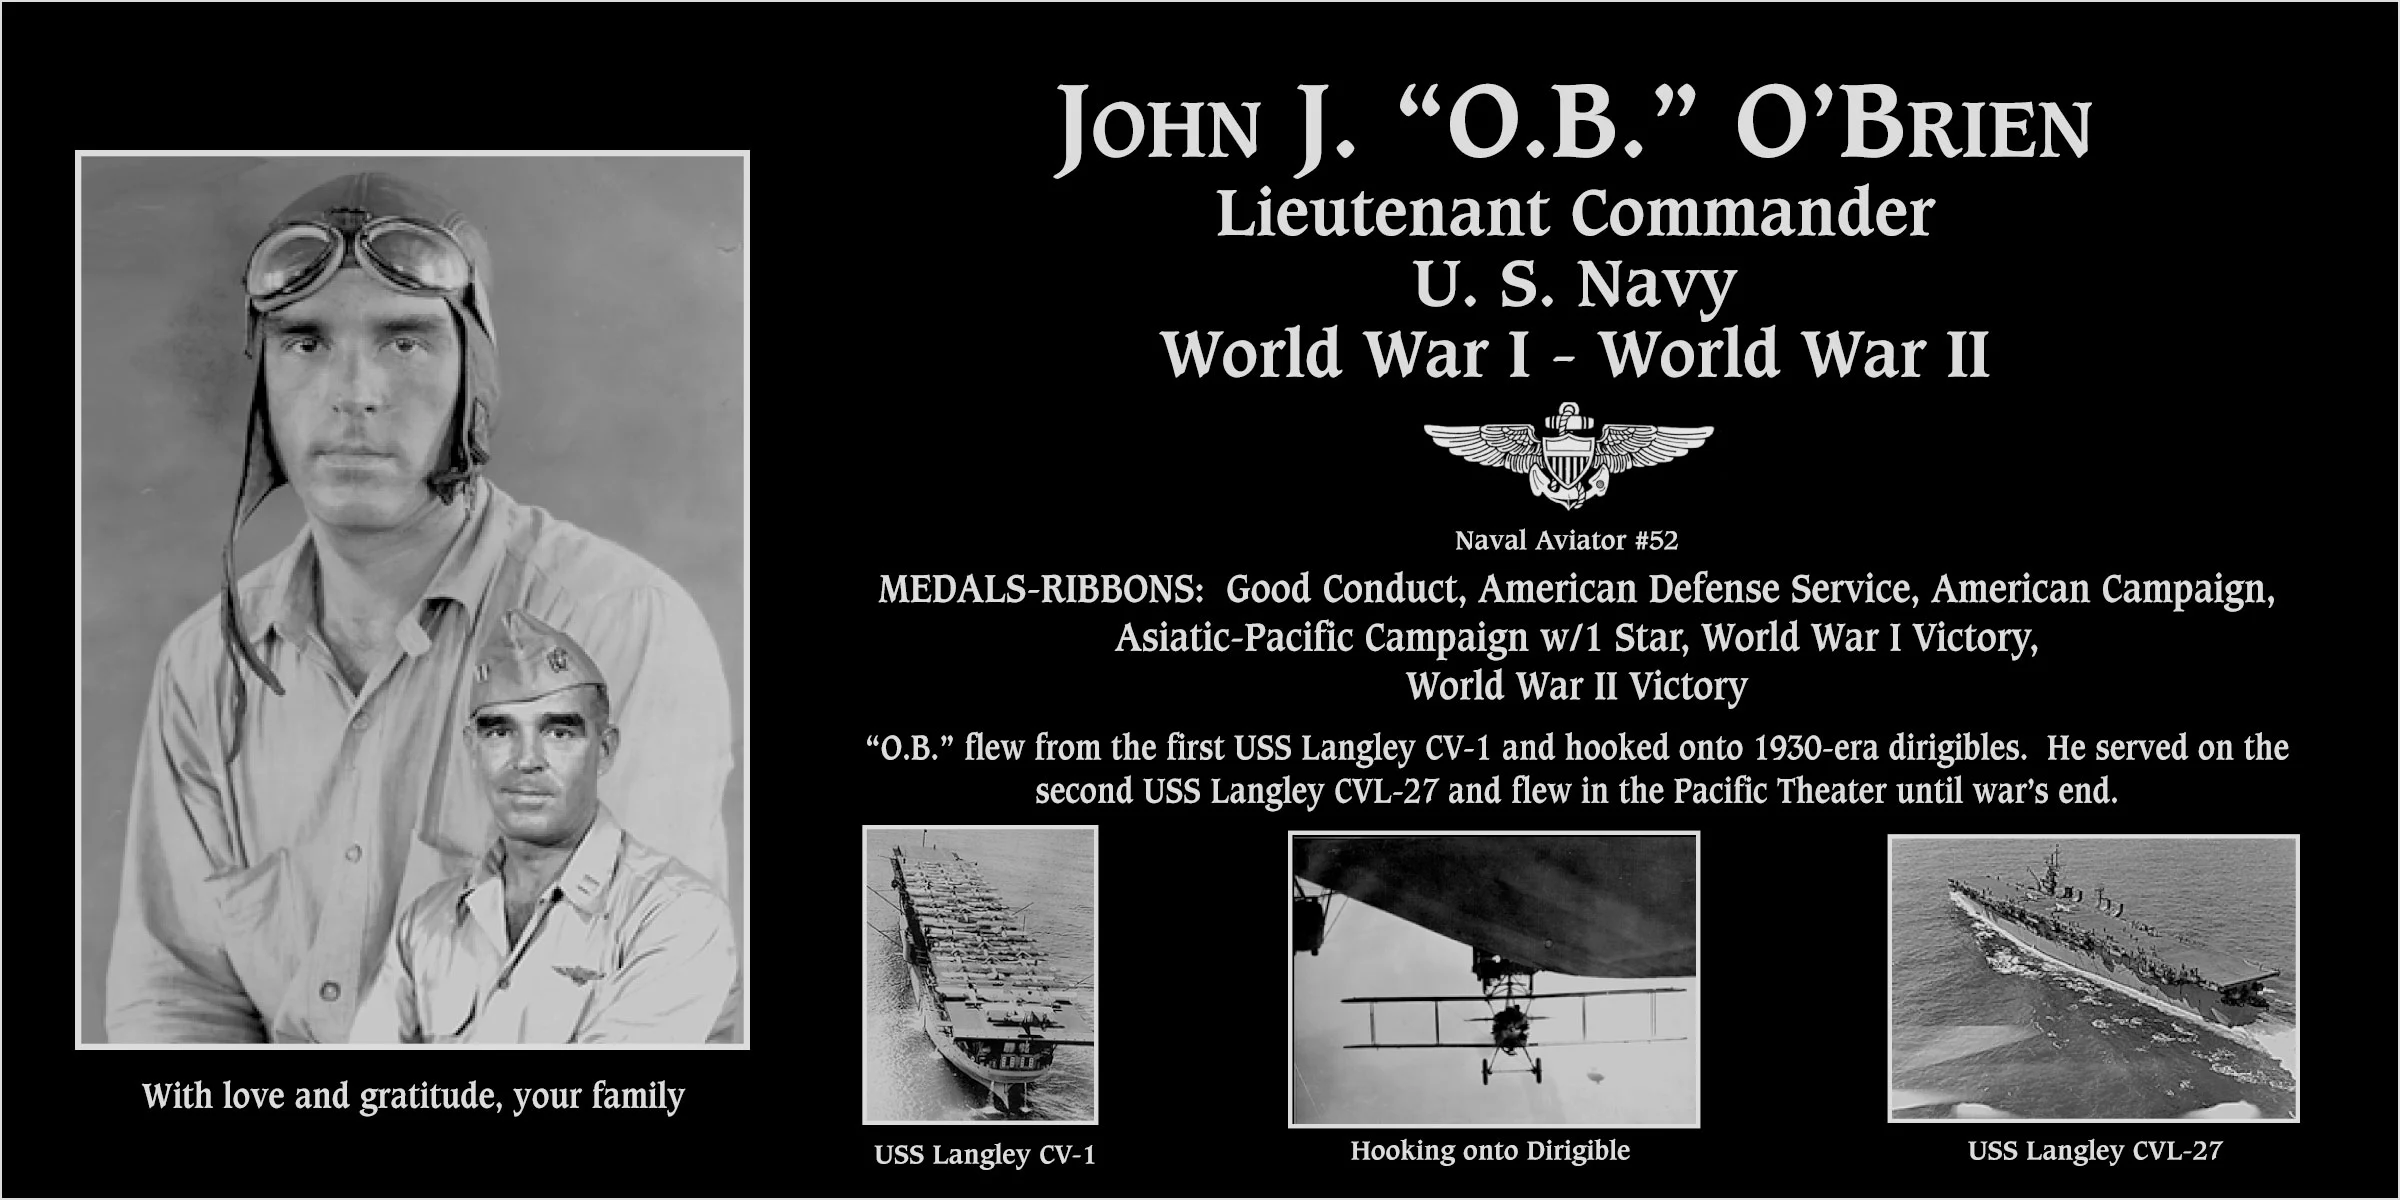 John J “O.B.” O'Brien